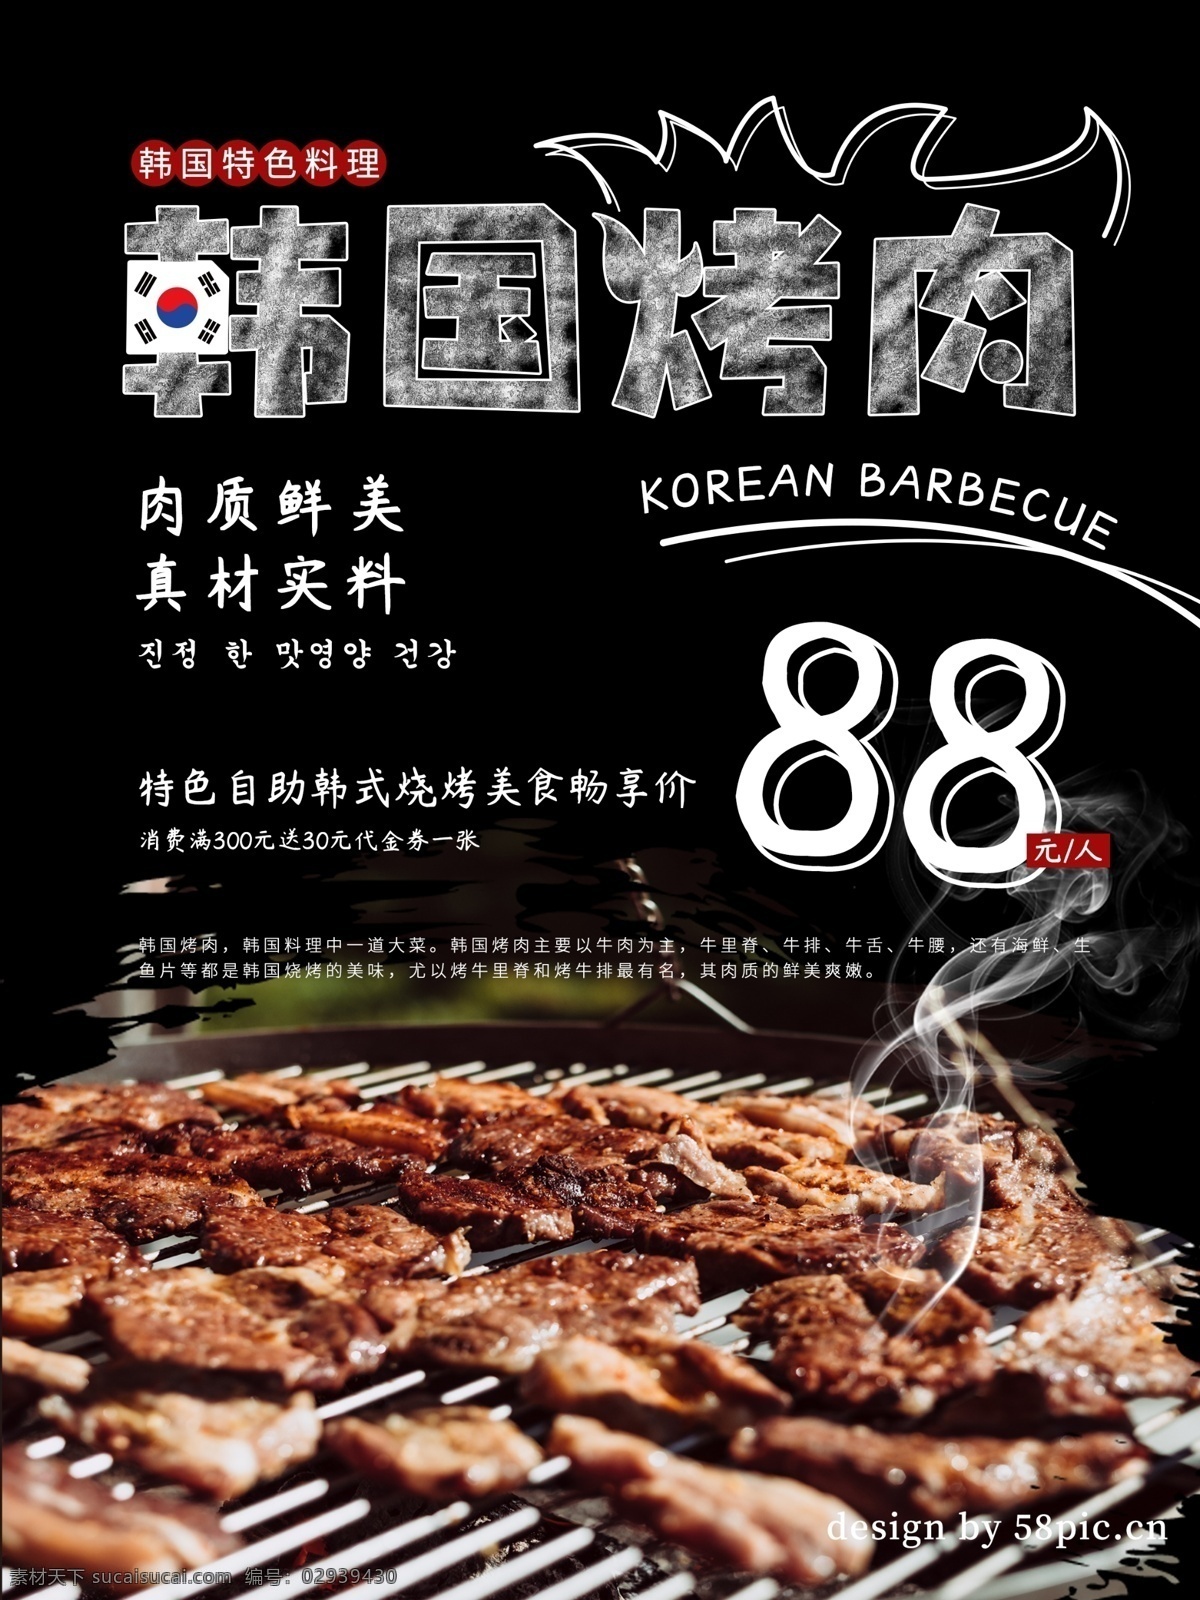 黑色 简约 线条 韩国 烤肉 美食 海报 自助烧烤 韩式 美味